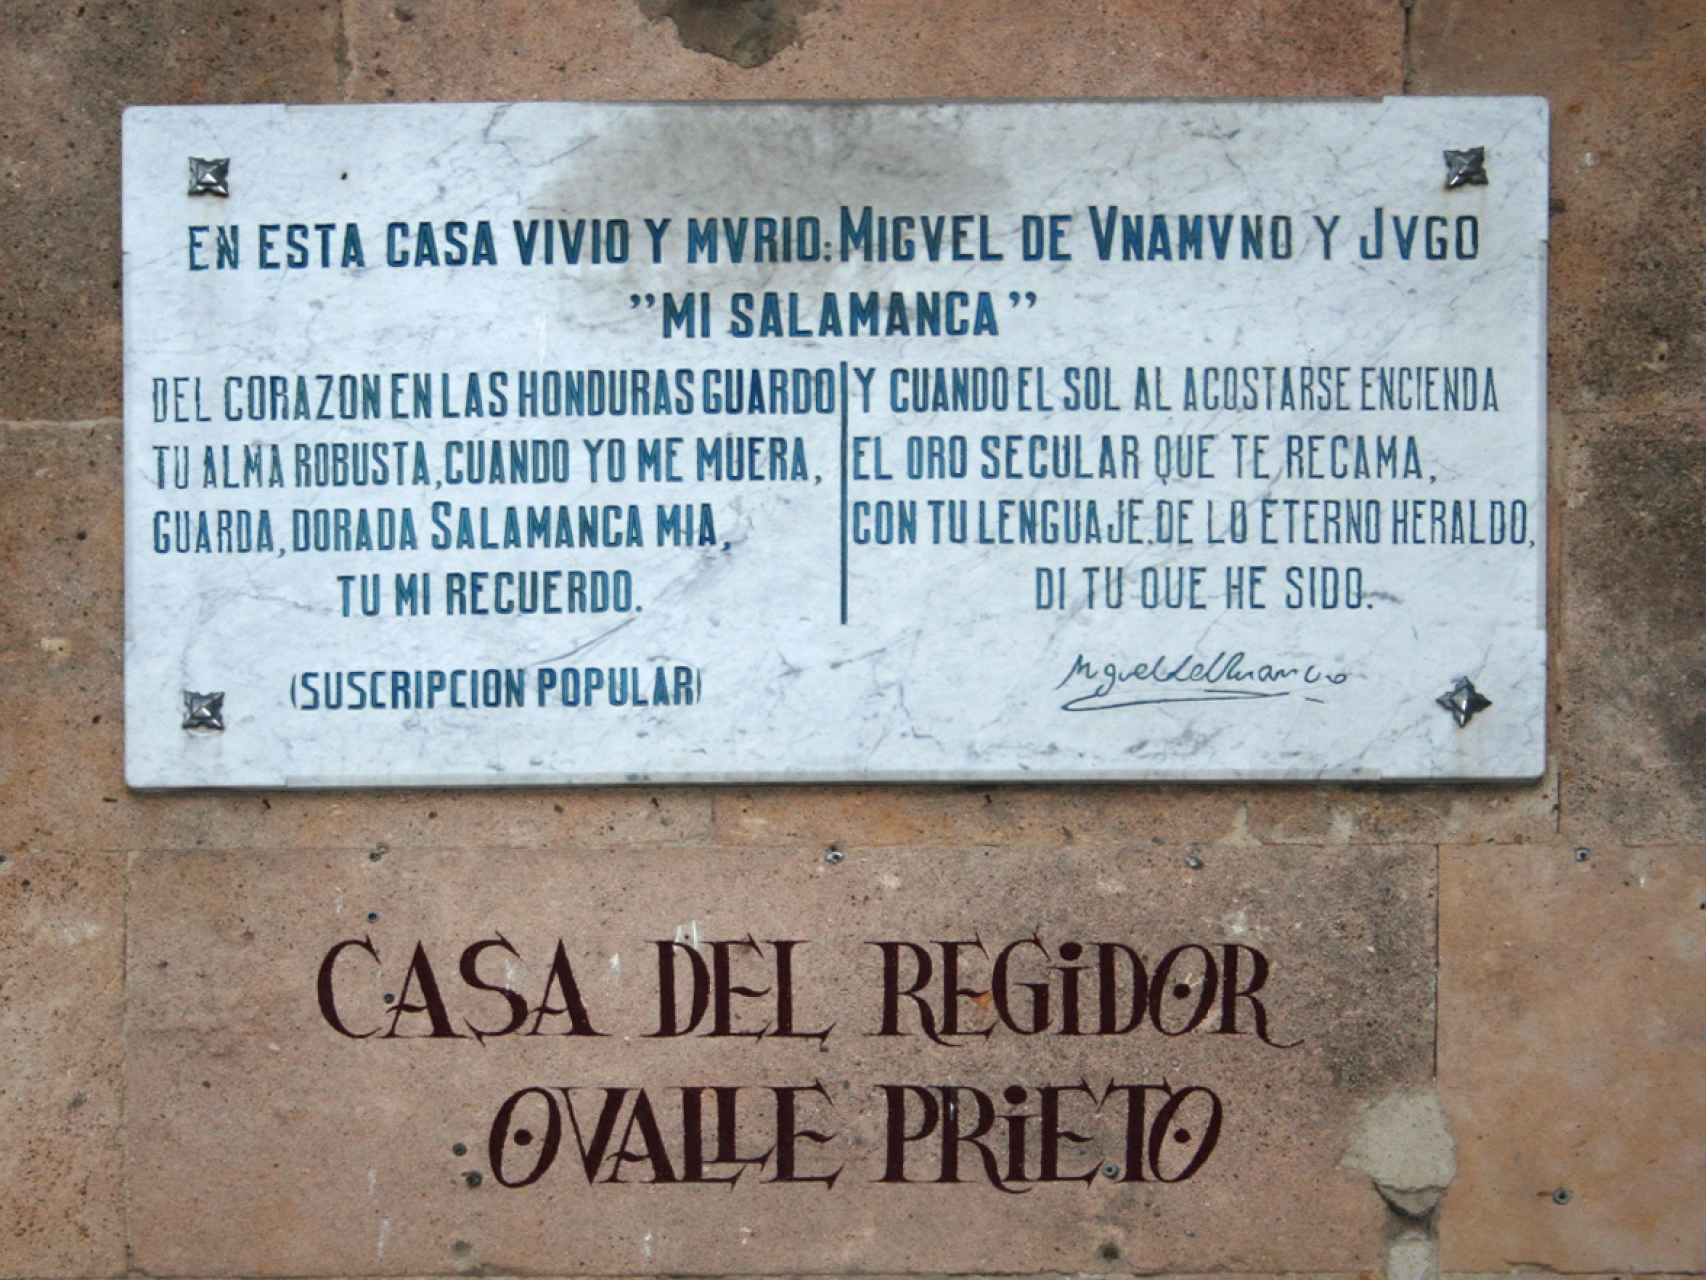 La lápida que se instaló, con versos unamunianos, en la fachada de la casa donde vivió y murió, en la calle Bordadores.